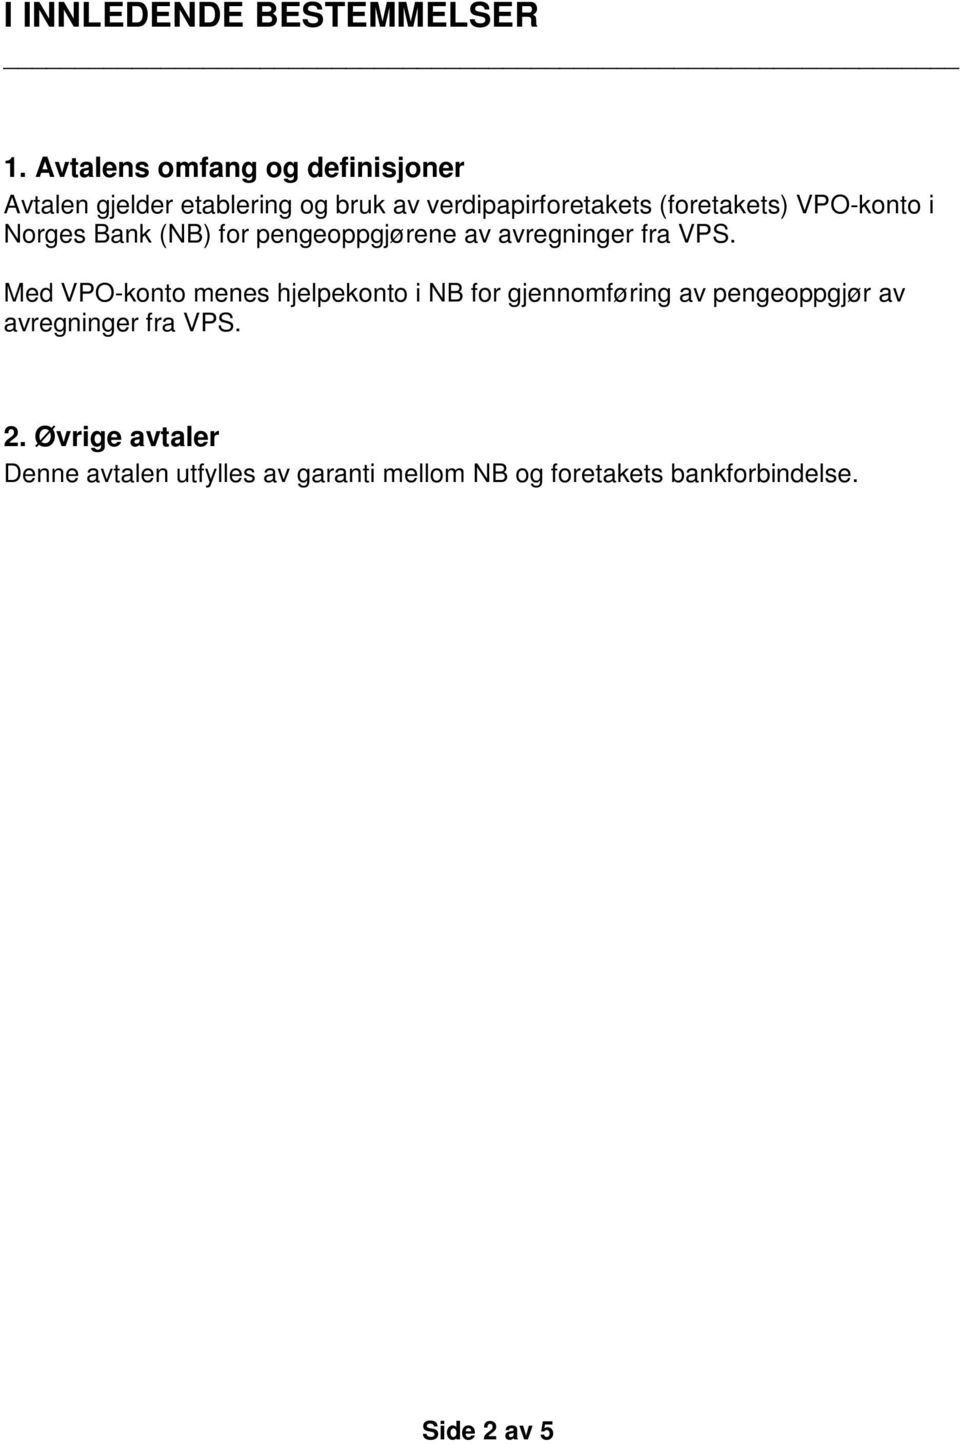 (foretakets) VPO-konto i Norges Bank (NB) for pengeoppgjørene av avregninger fra VPS.